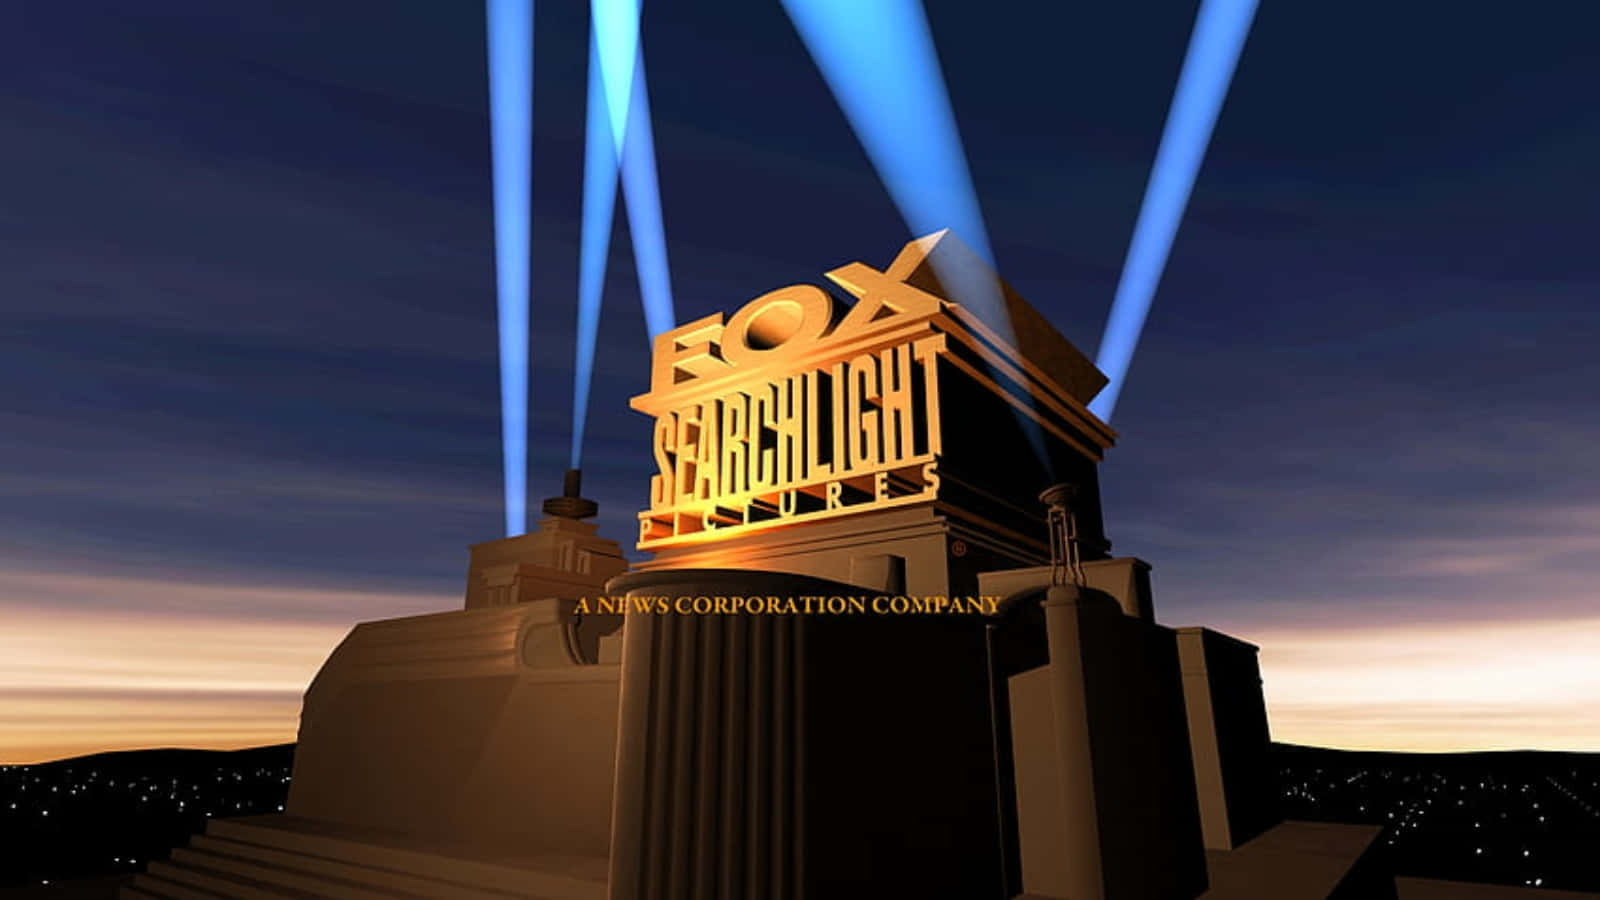 Imagendel Logo De Searchlight En El Cielo.